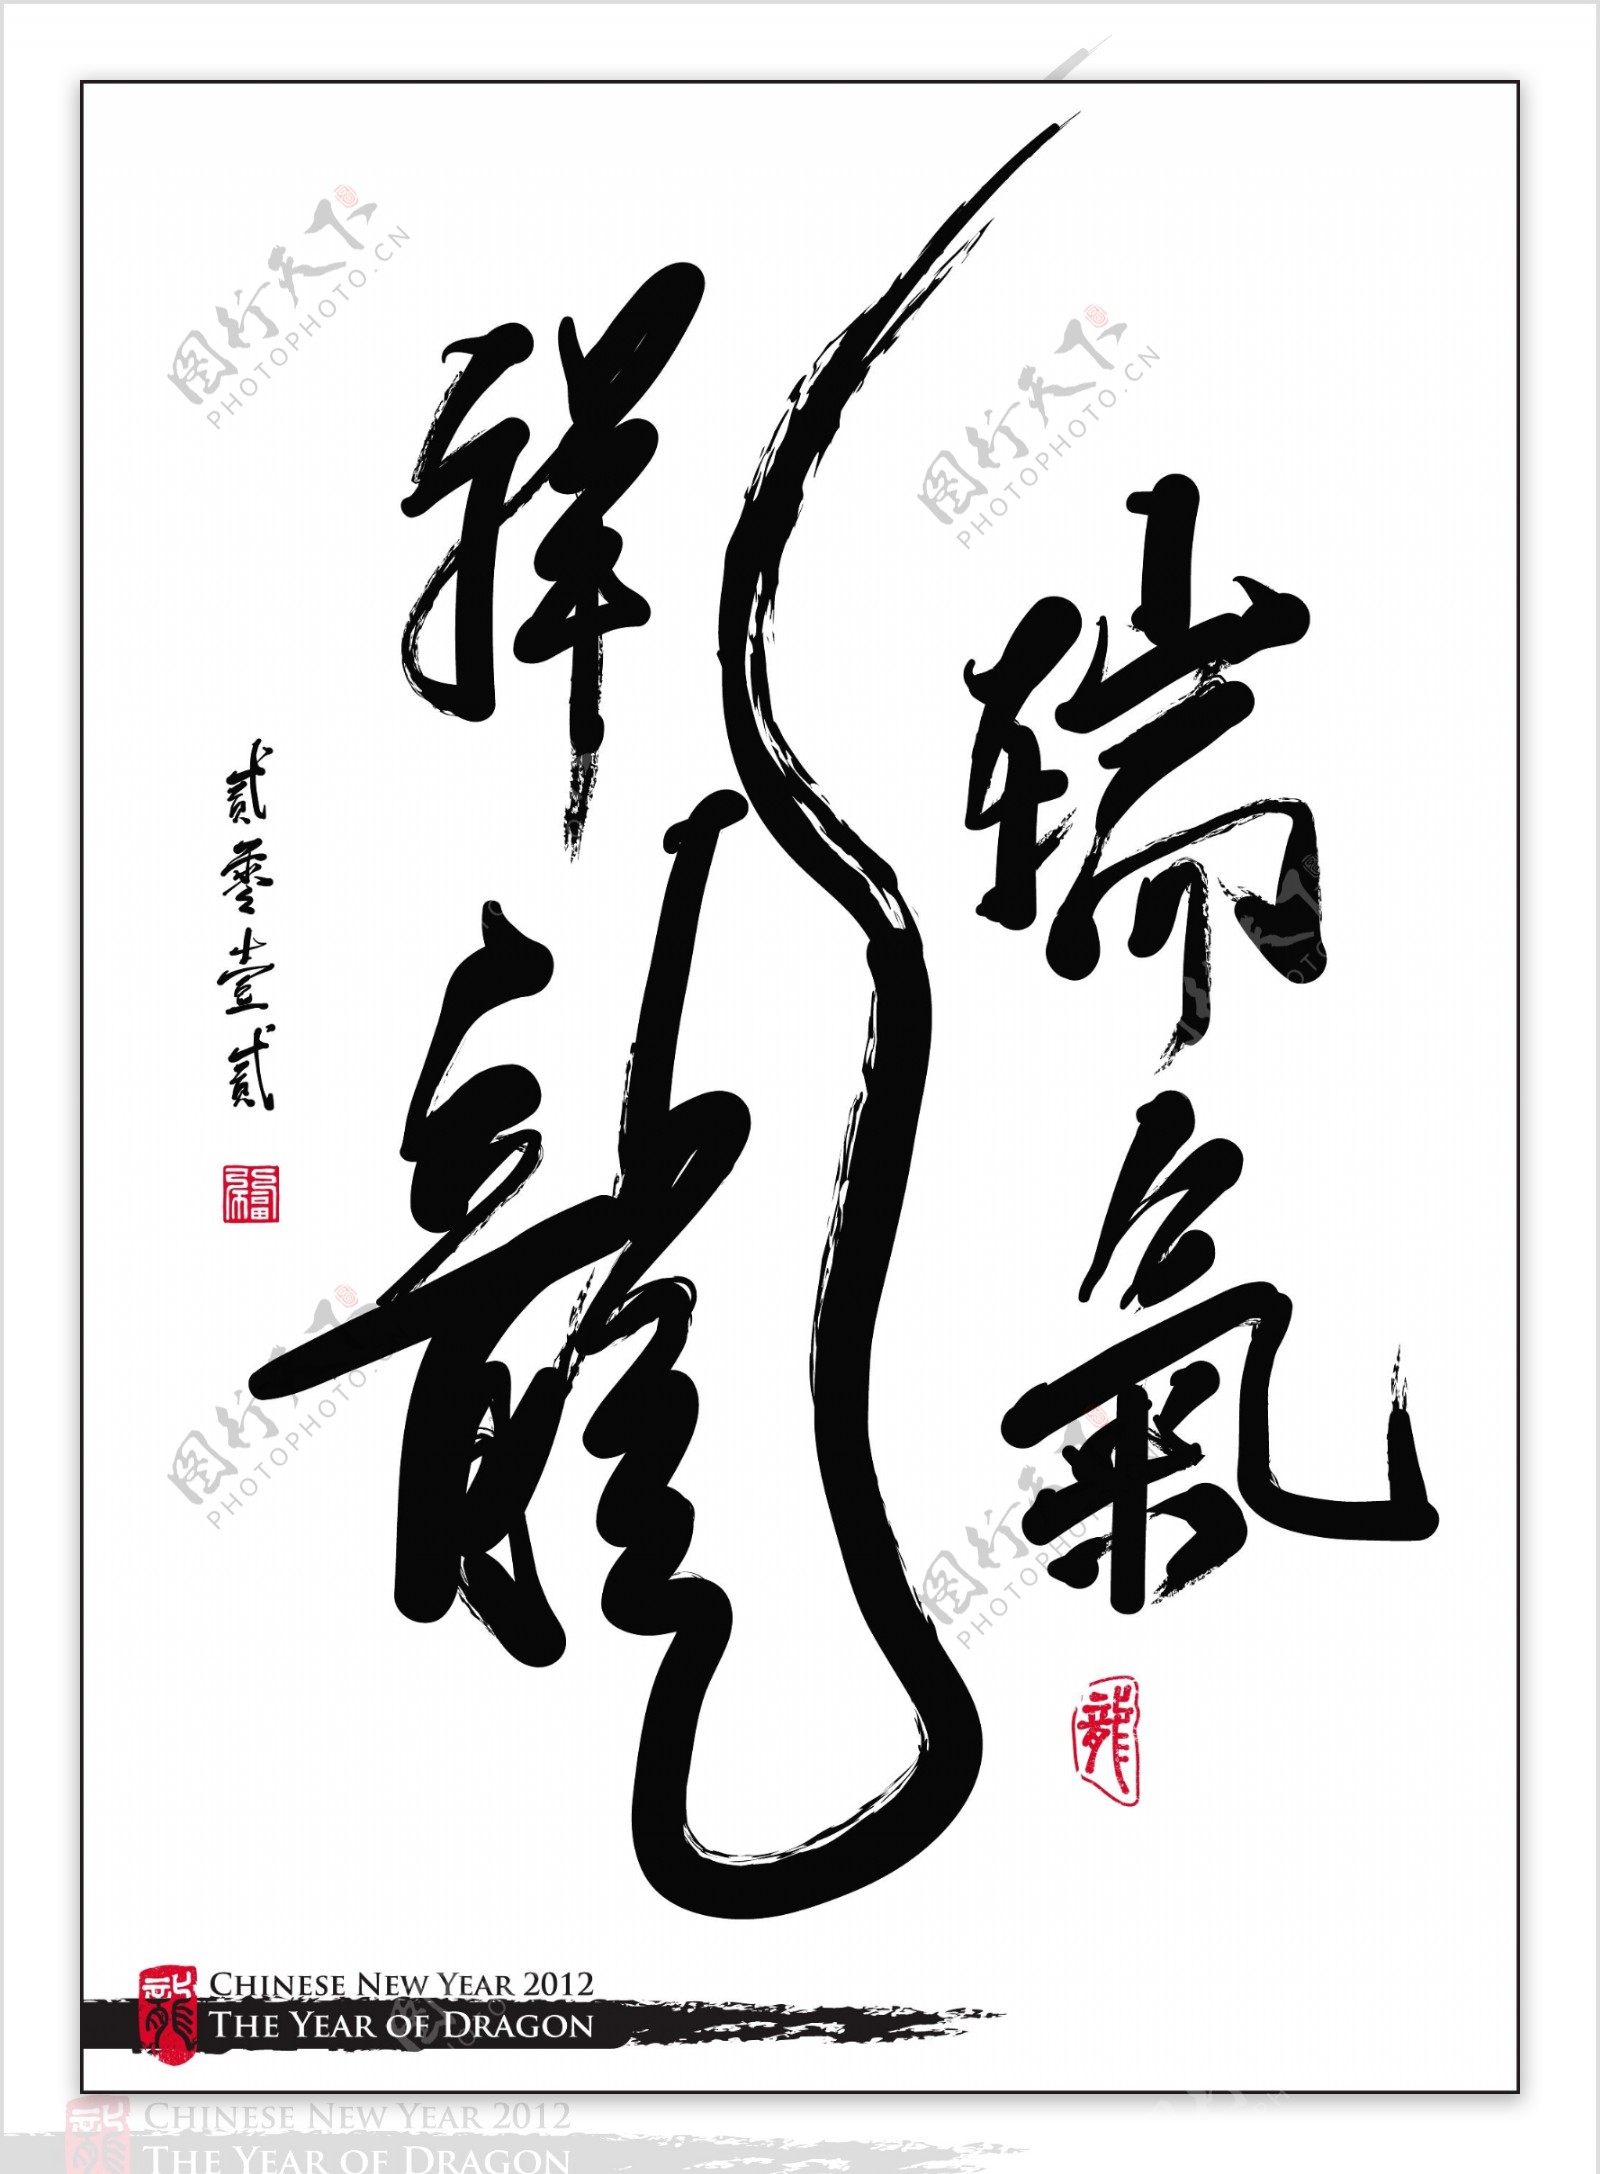 向量的中国新年书法的一年吉祥的龙龙的翻译